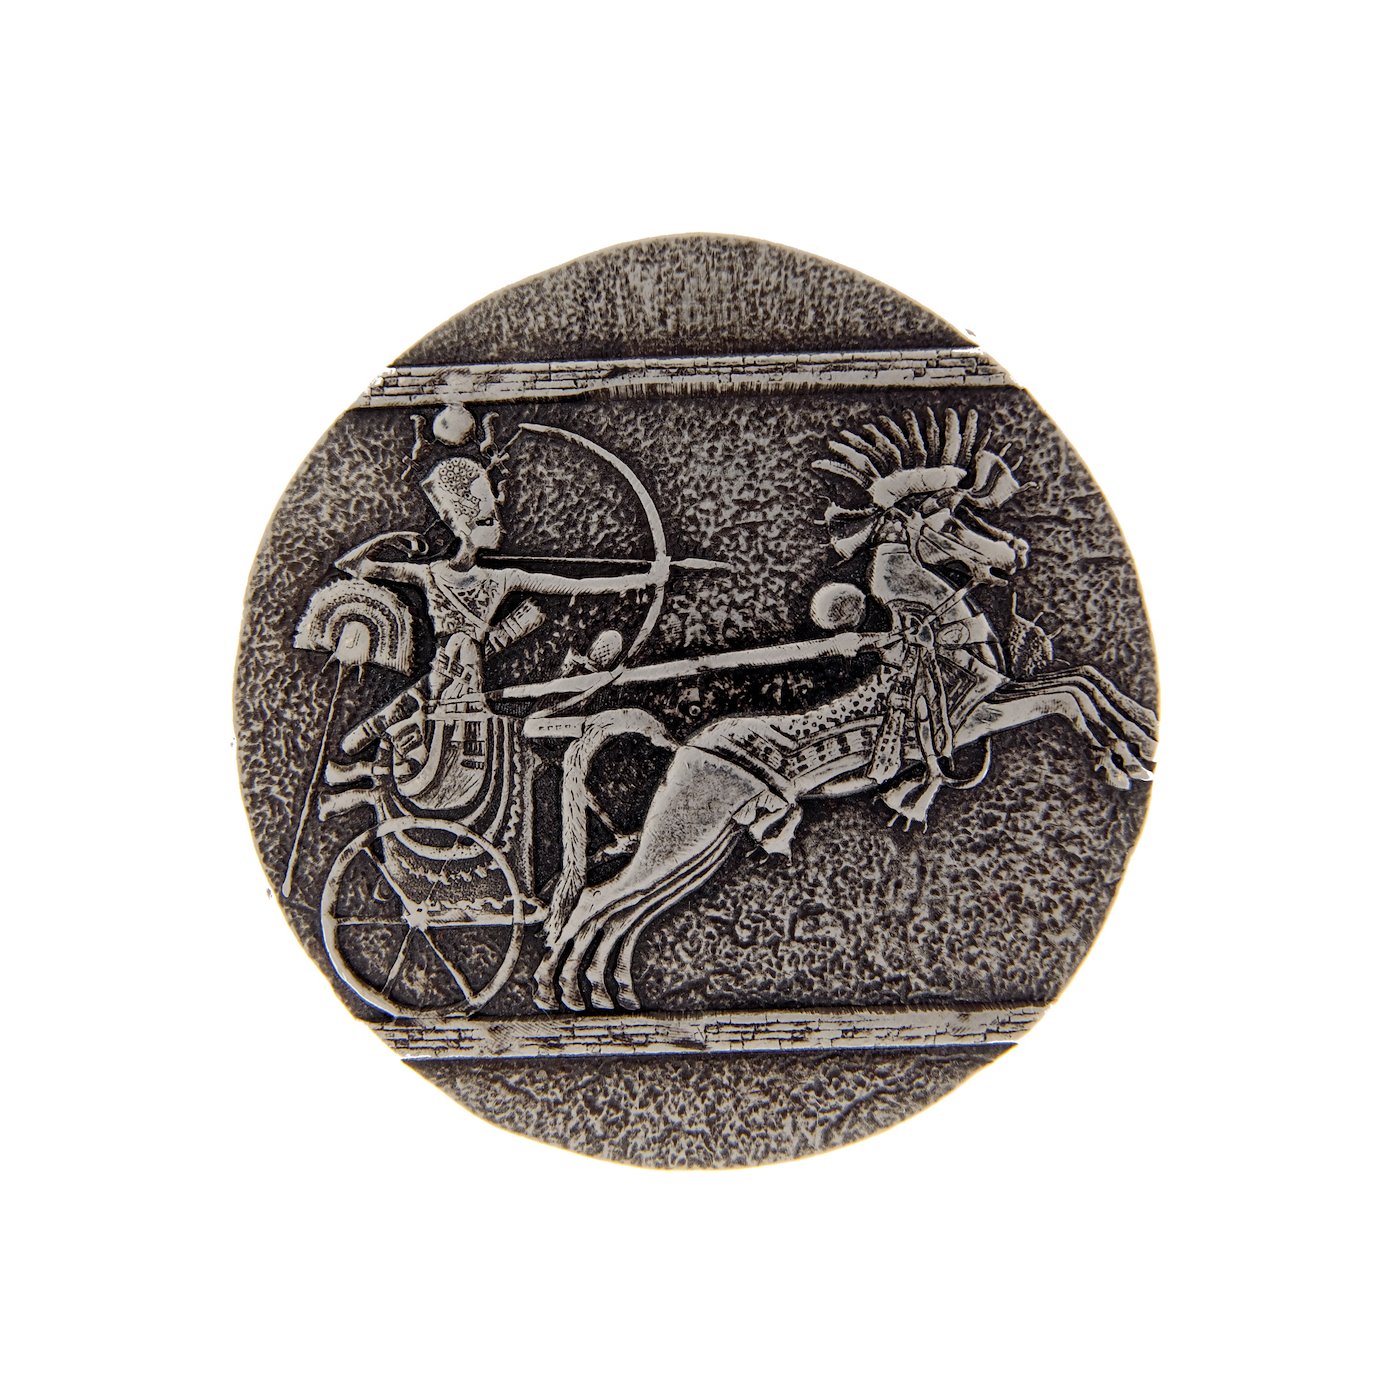 Mince - Stříbrná 5 uncová mince Egypt 2021 Rep. CHAD. Stříbro 999/1000, hrubá hmotnost 155,75g. 